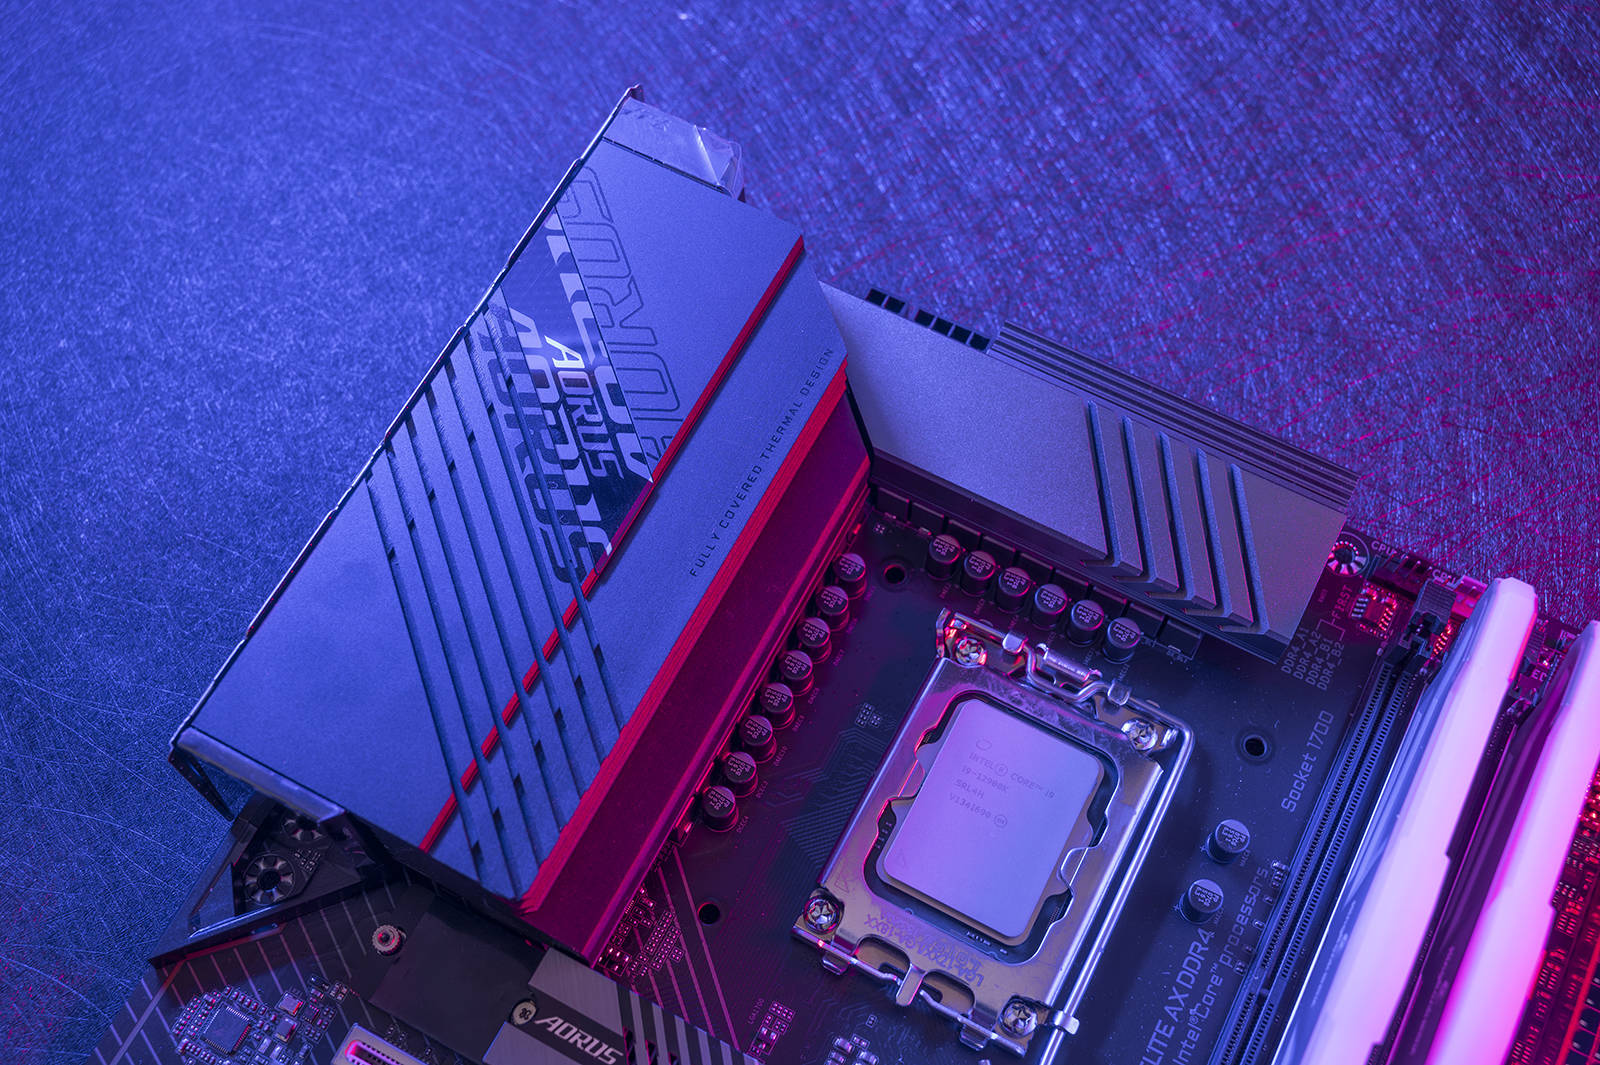 技嘉 B250M DDR4 2400 主板：电脑世界的耀眼明珠，性能与外观的完美结合  第1张